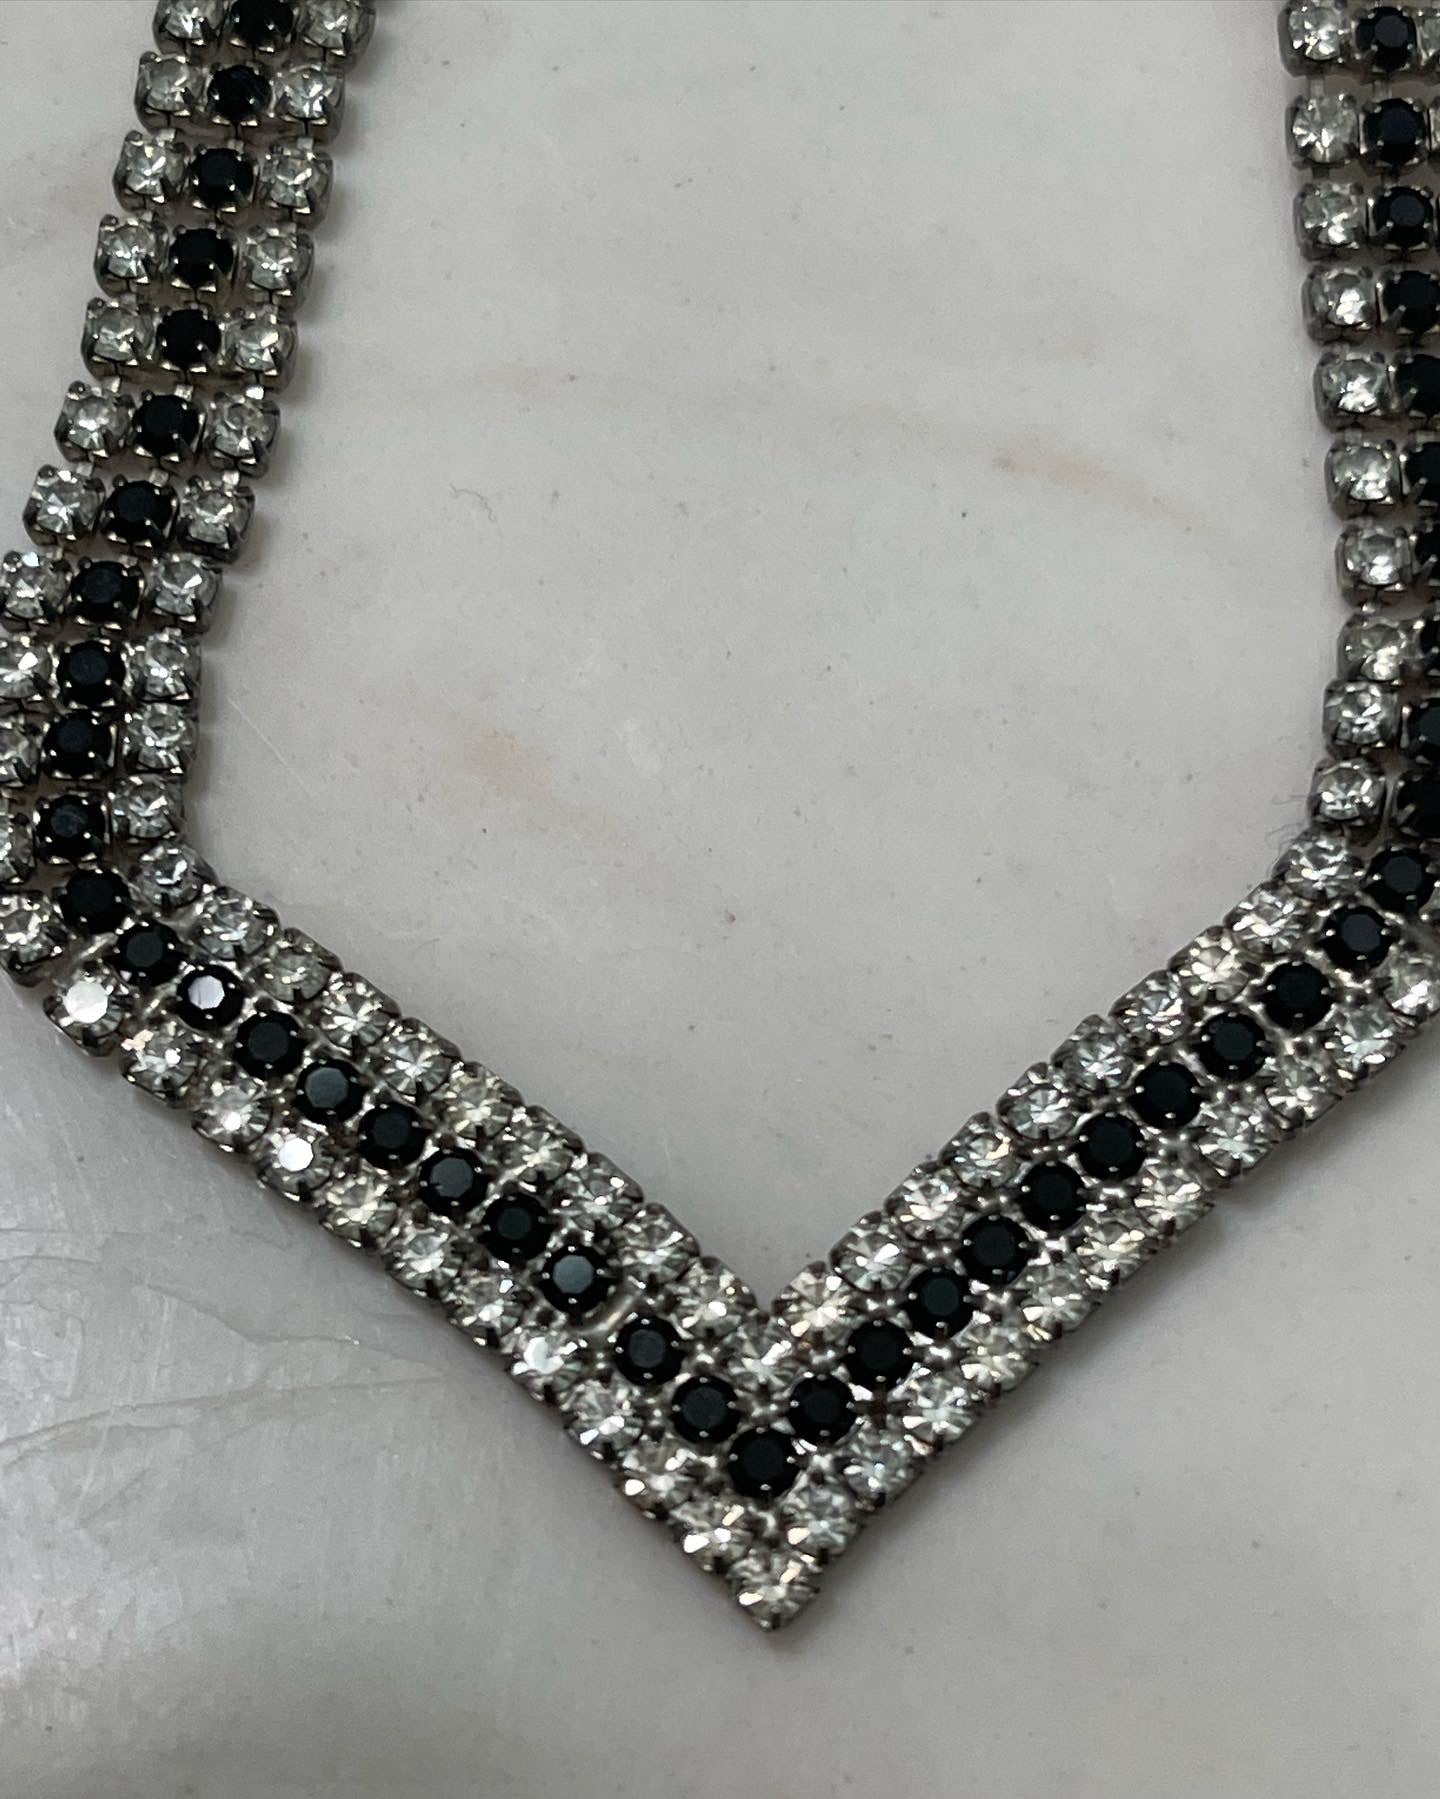 Rhinestone necklace, vintage rhinestone necklace